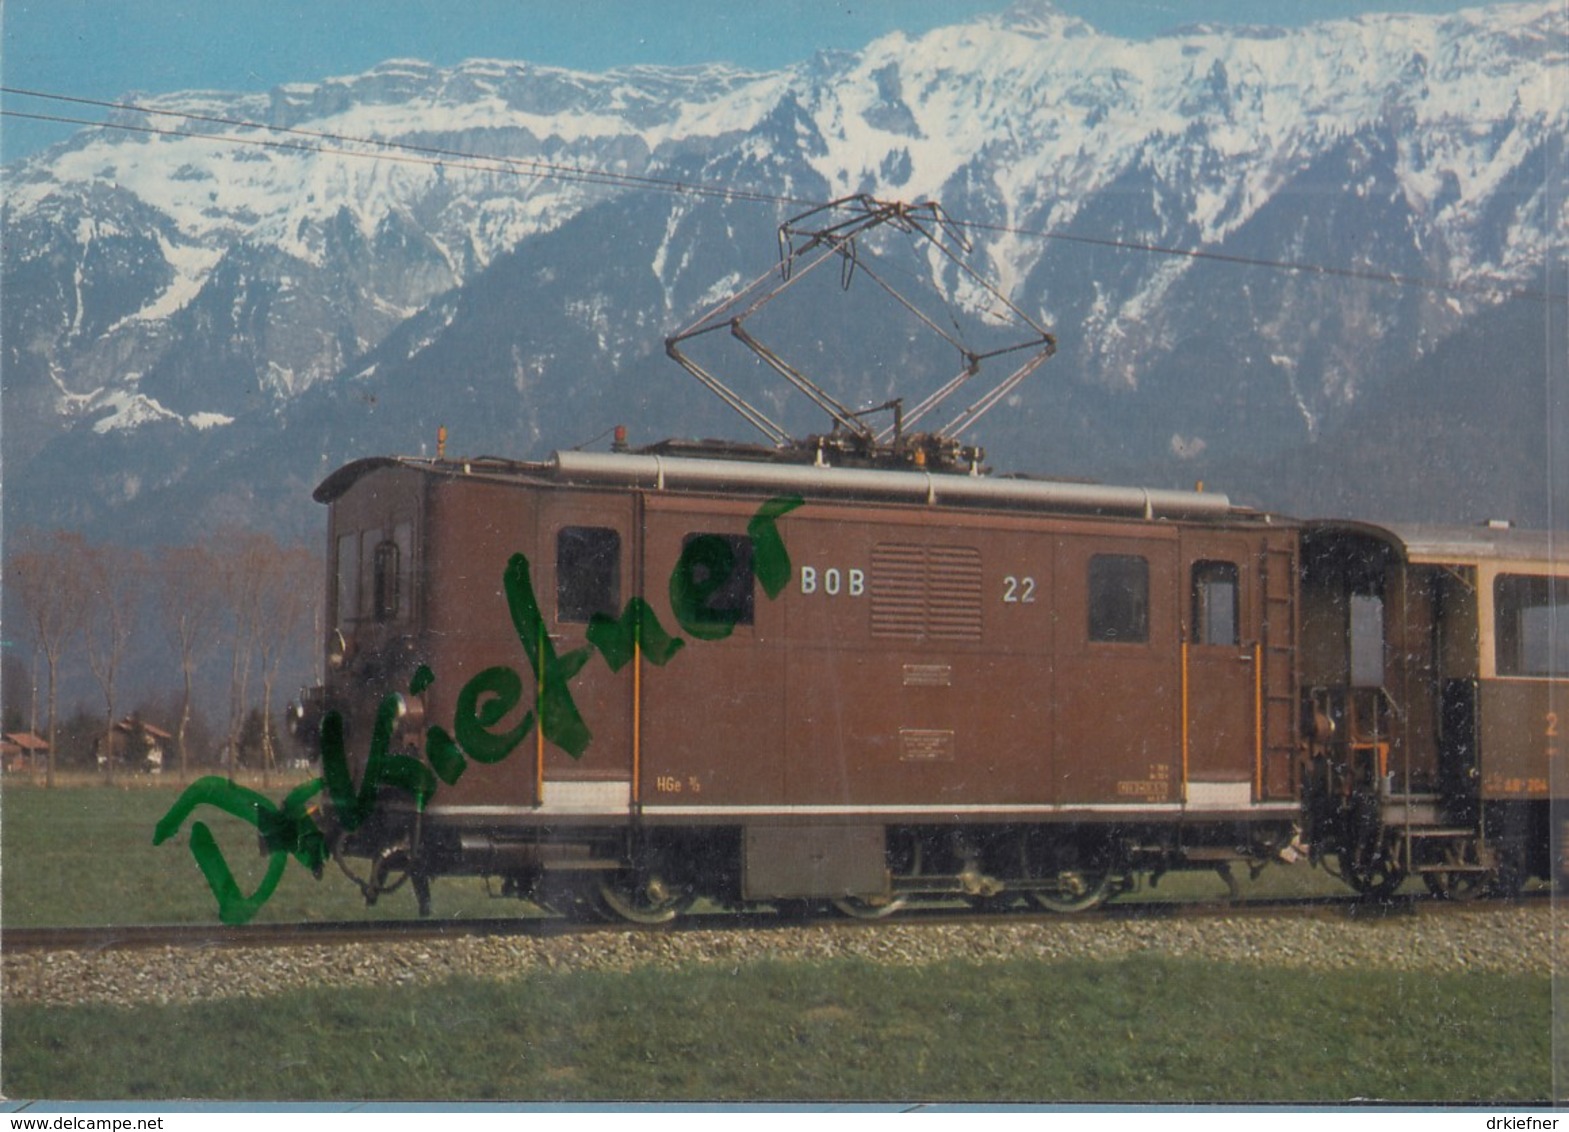 BOB HGe 3/3 22, Meterspur Zahnrad-Lokomotive, Berner Oberland-Bahnen 1975 - Eisenbahnen